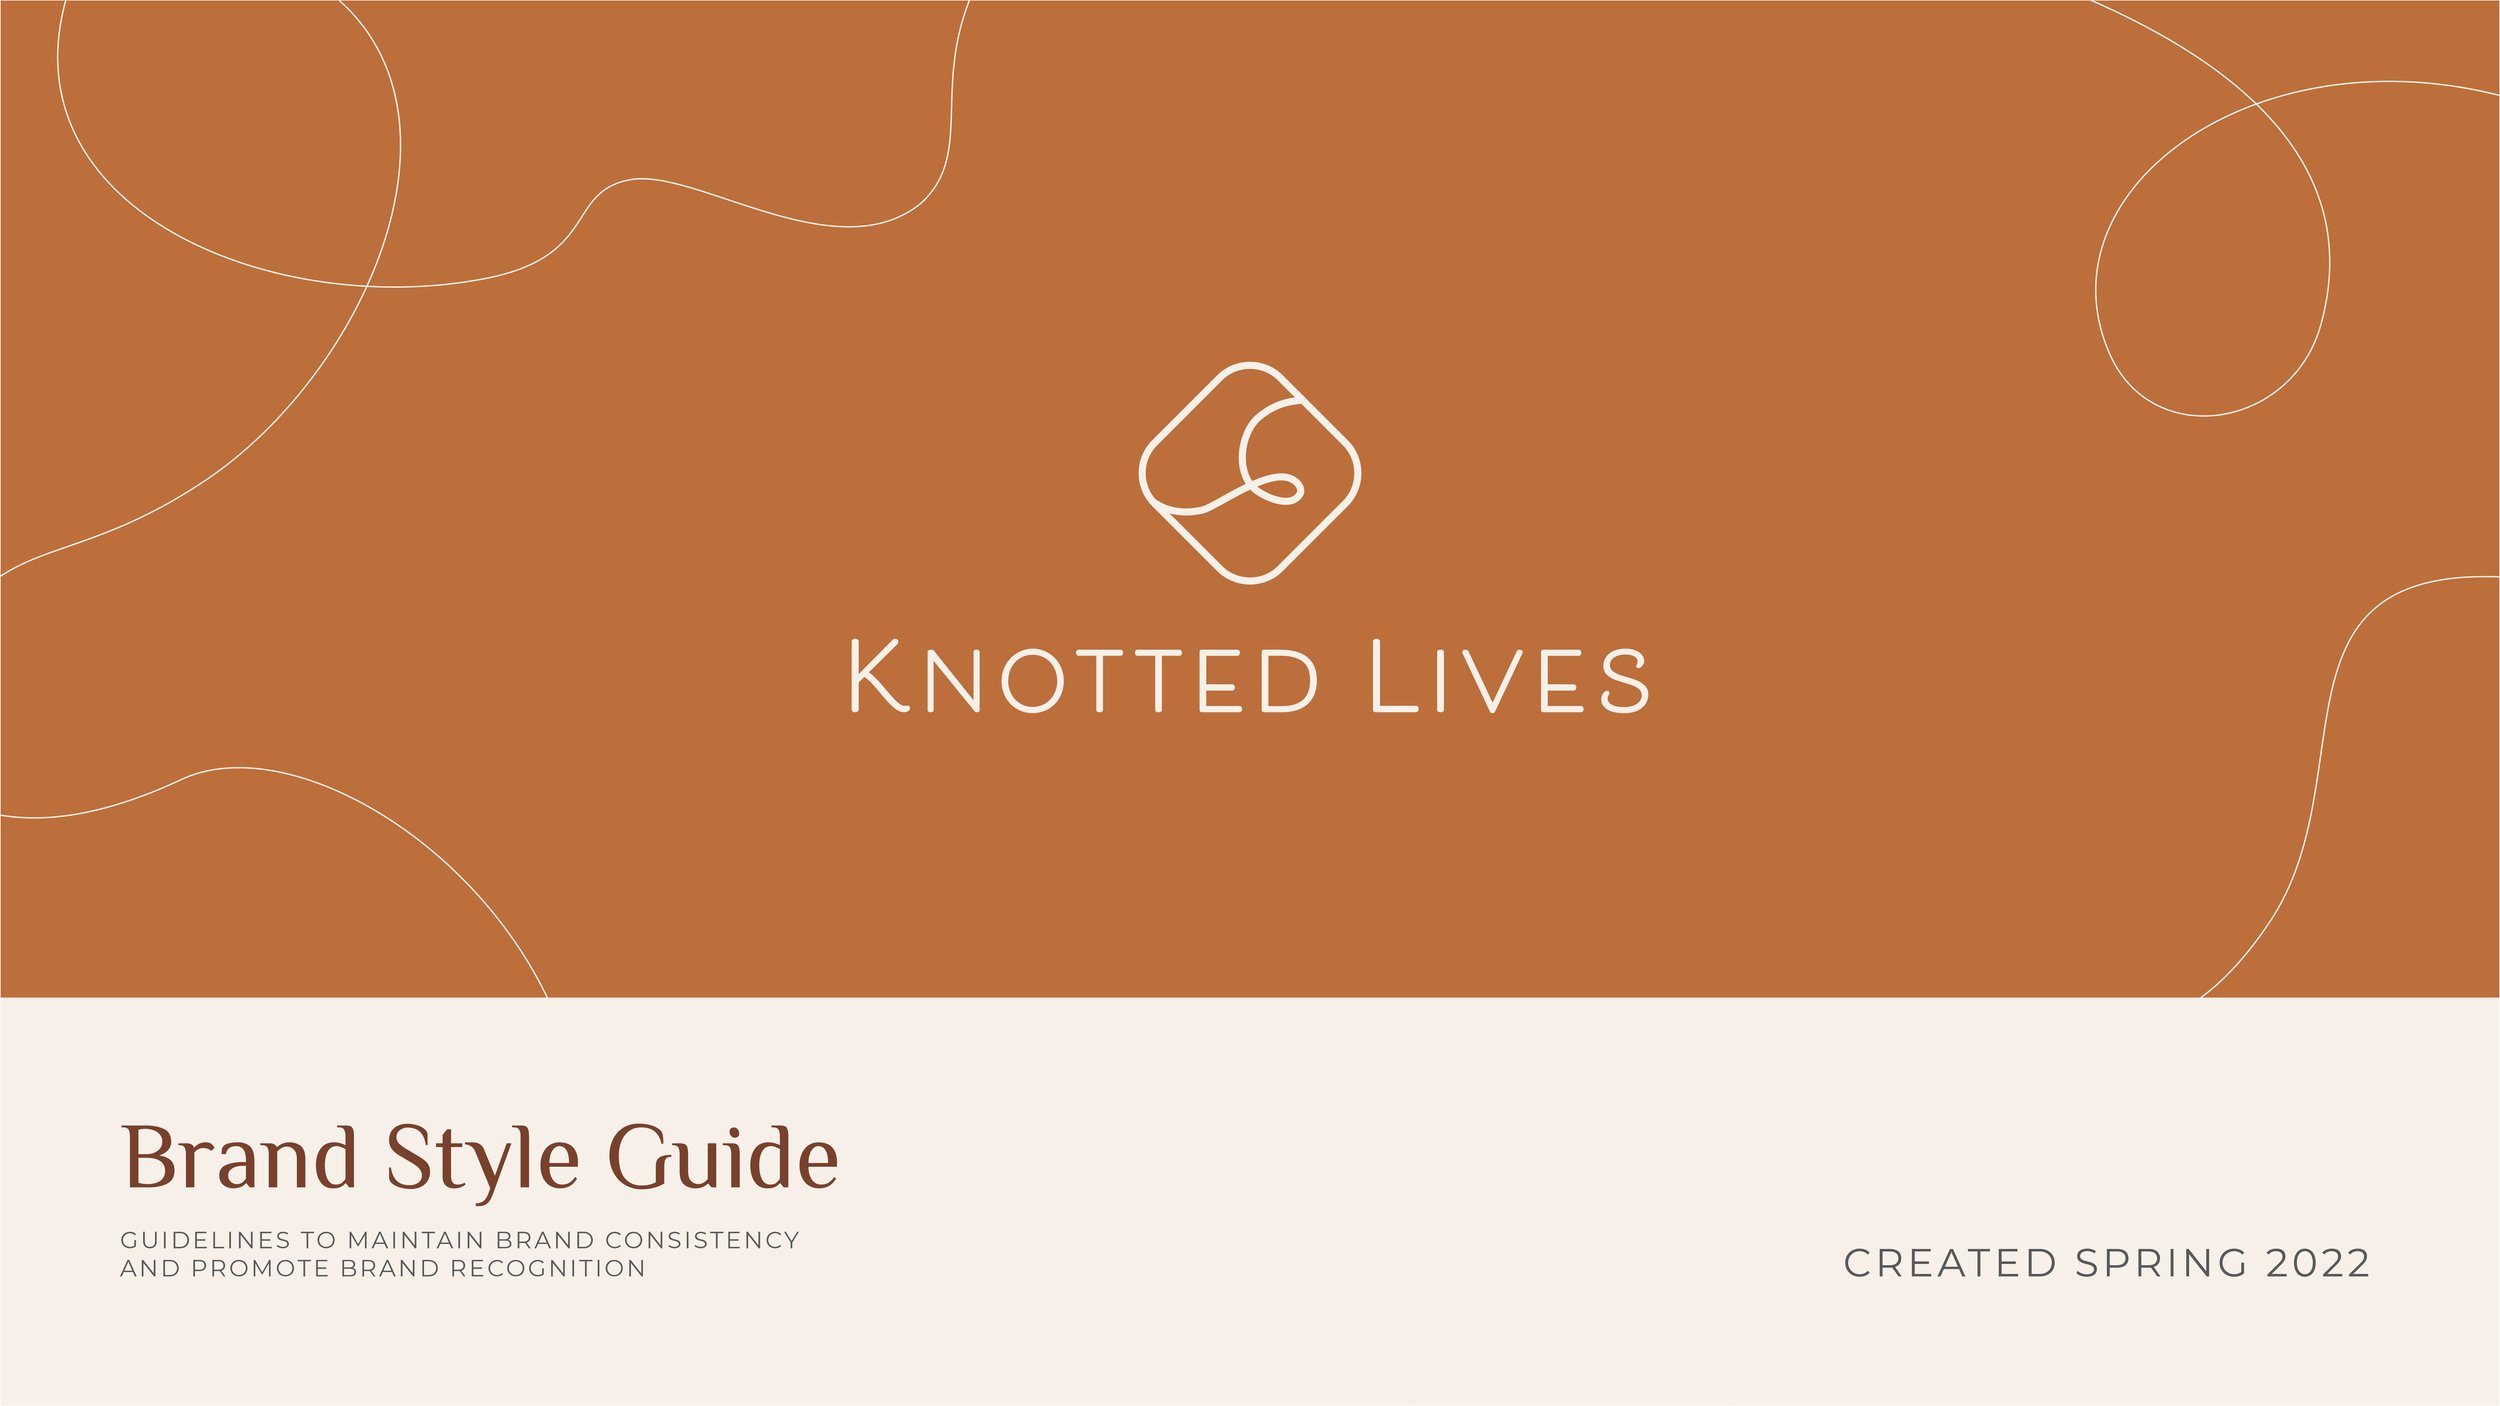 KnottedLives_BrandStyleGuide_2022.jpg